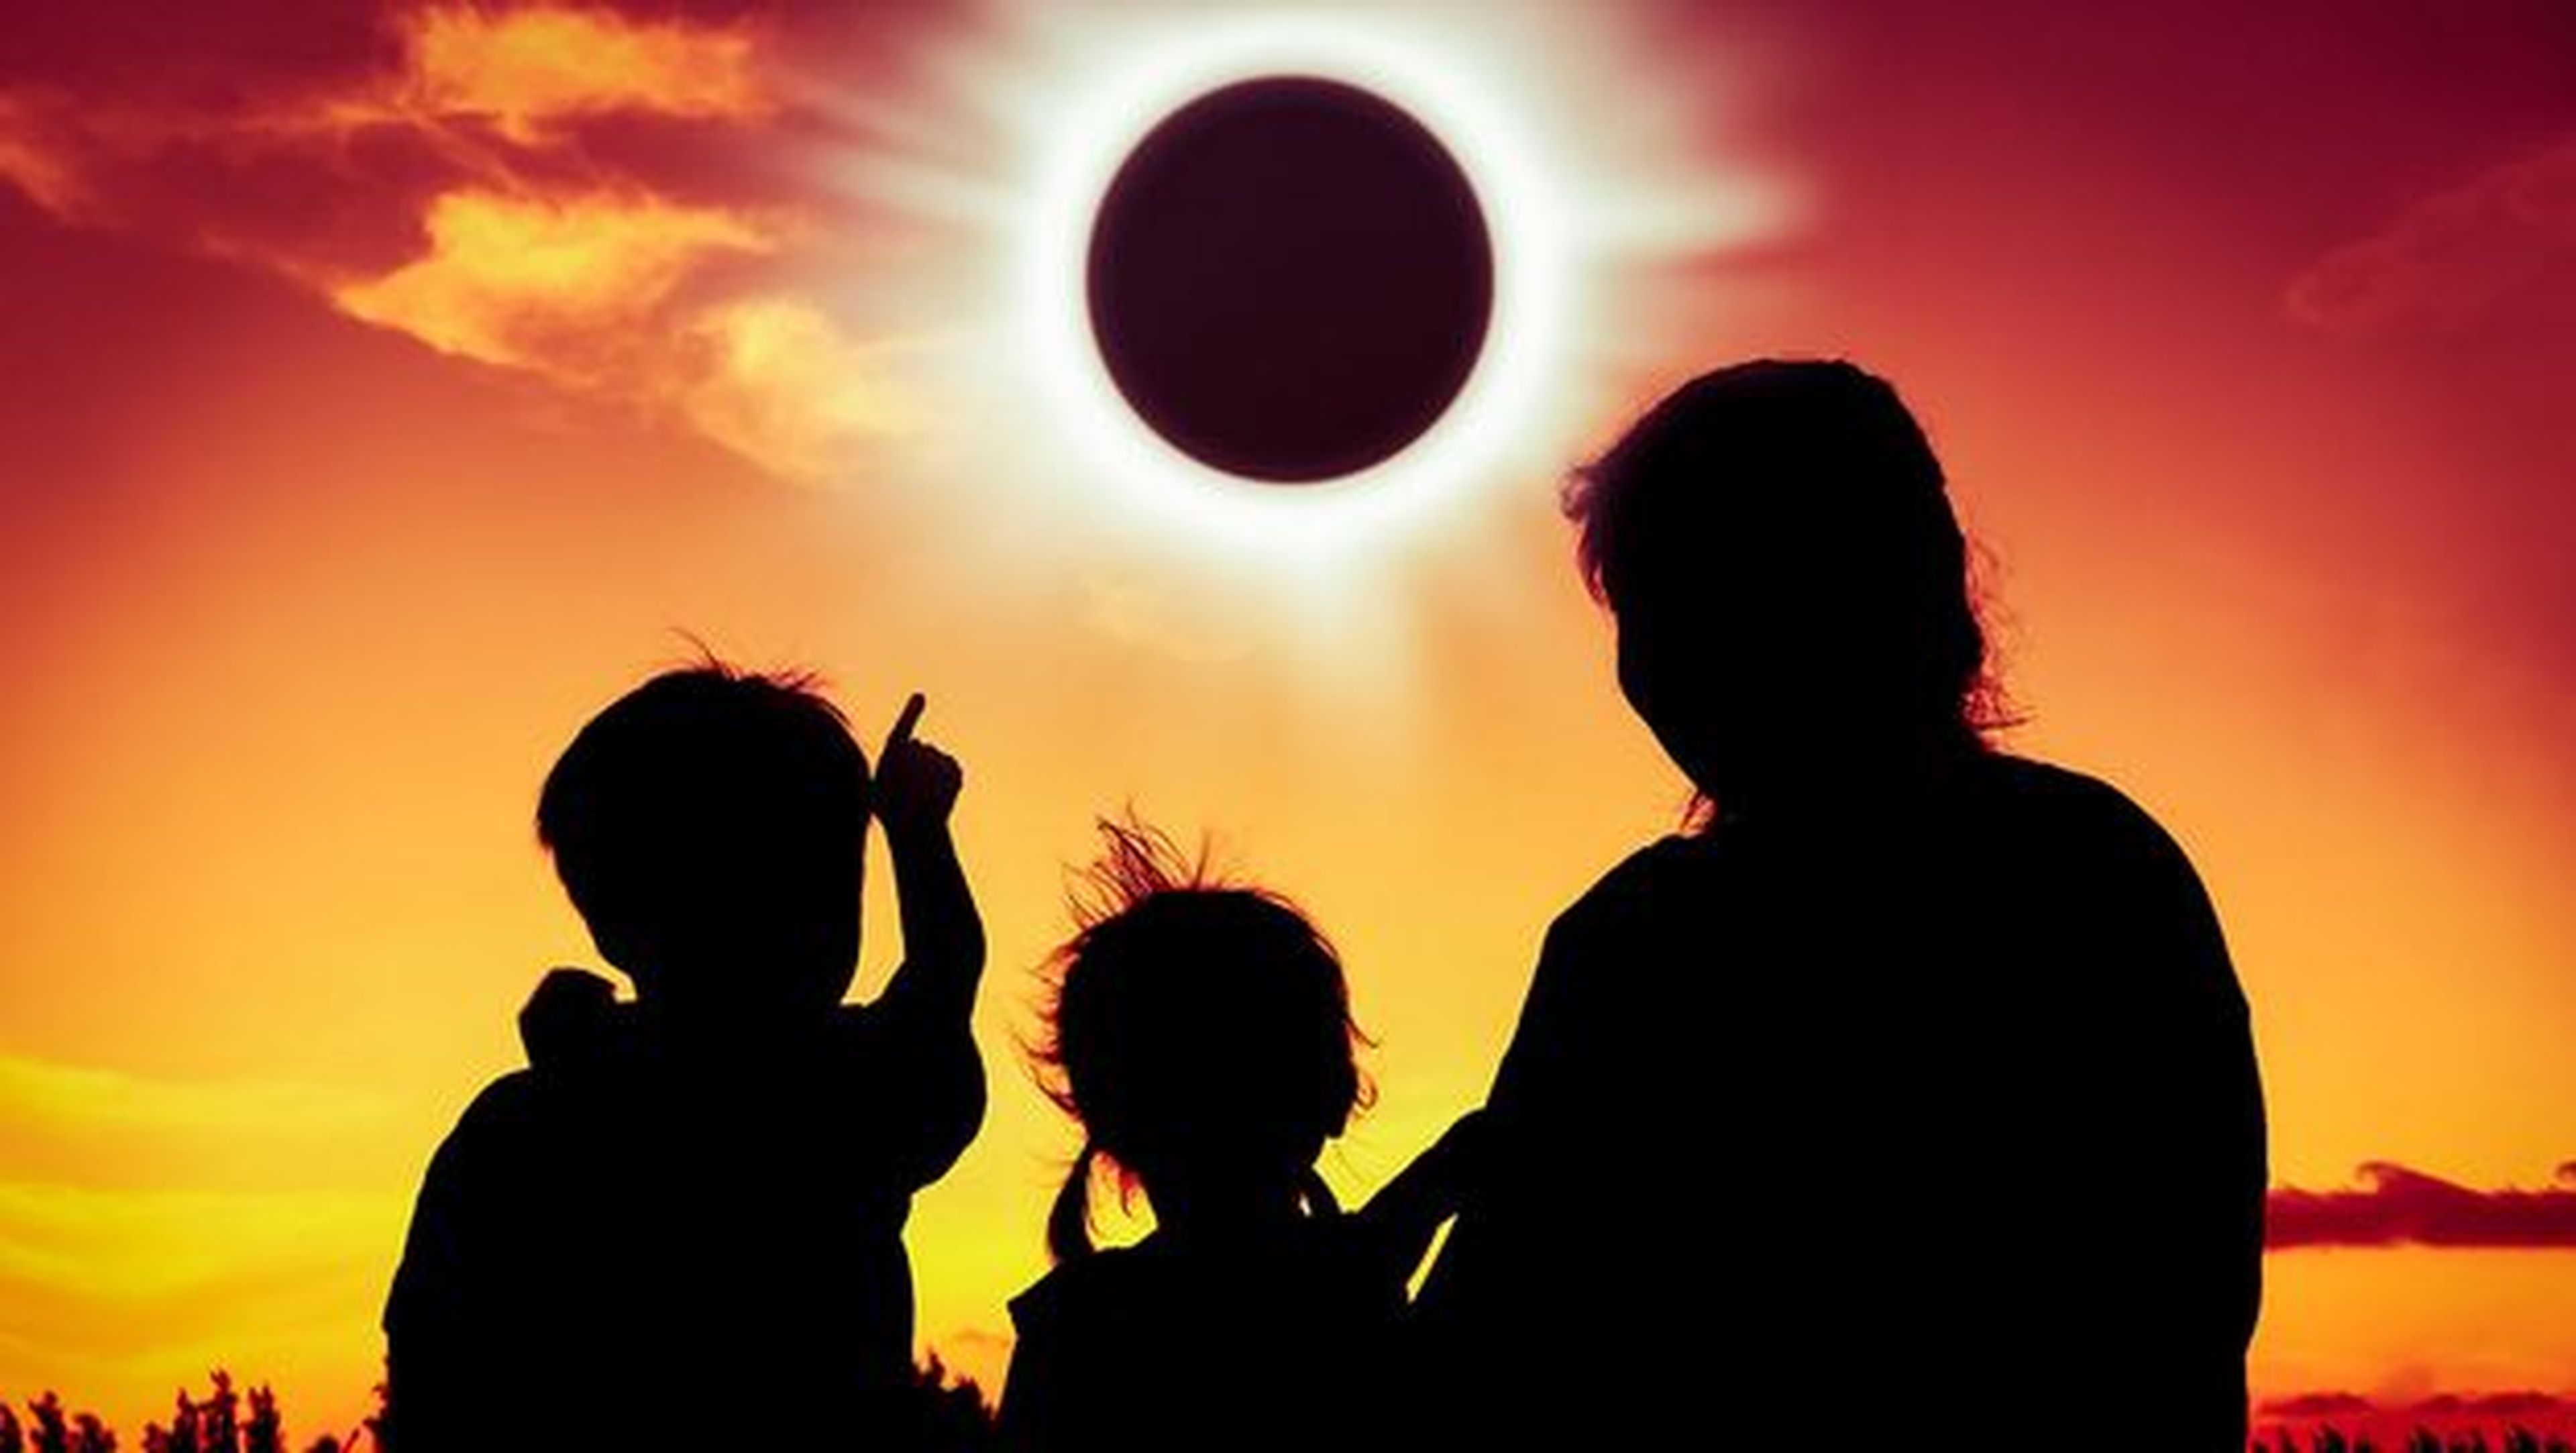 Ondas de proa eclipse solar agosto 2017